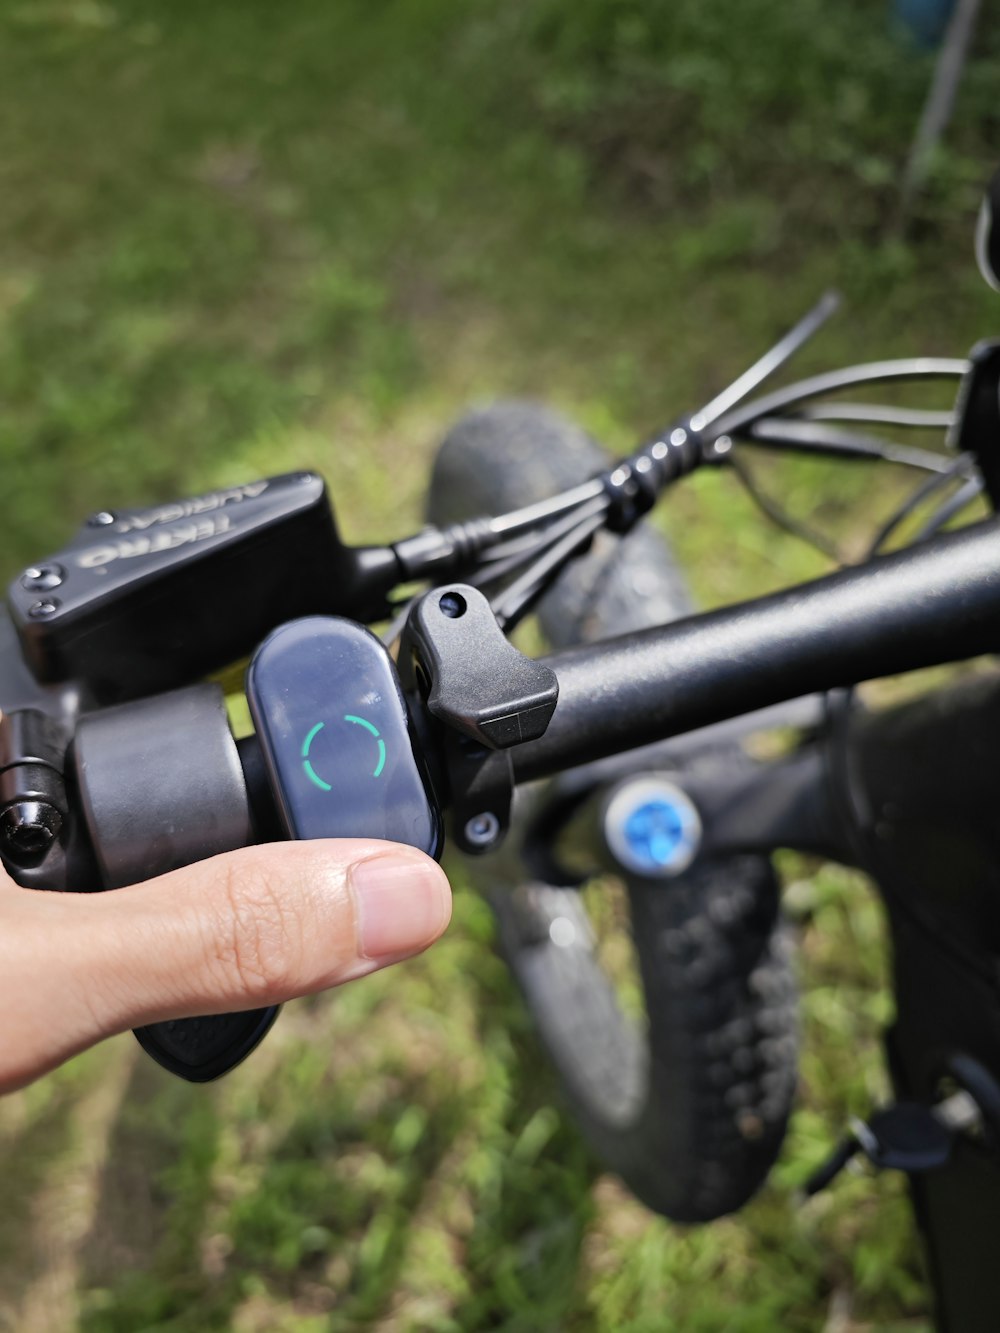 Una persona sostiene el manillar de una bicicleta con una cámara conectada a él